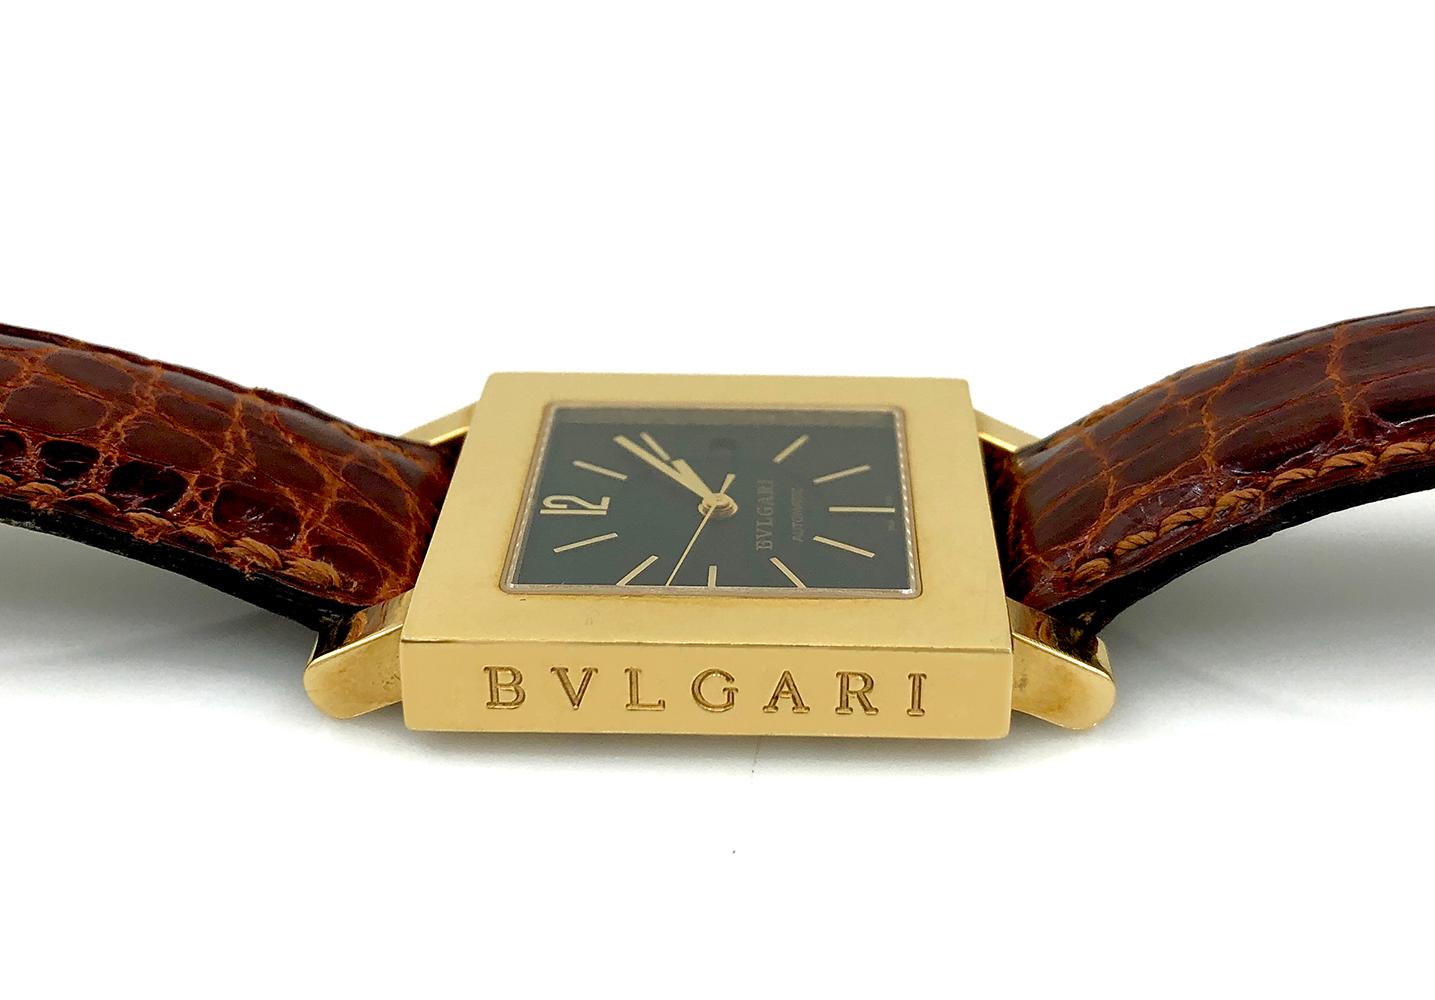 Eine klassische Bulgari-Armbanduhr, die zeitlose Eleganz und Raffinesse ausstrahlt. Sie besteht aus einem quadratischen Zifferblatt aus 18-karätigem Gold mit schwarzem Zifferblatt, goldenen Zeigern und Markierungen und einem braunen Lederarmband.